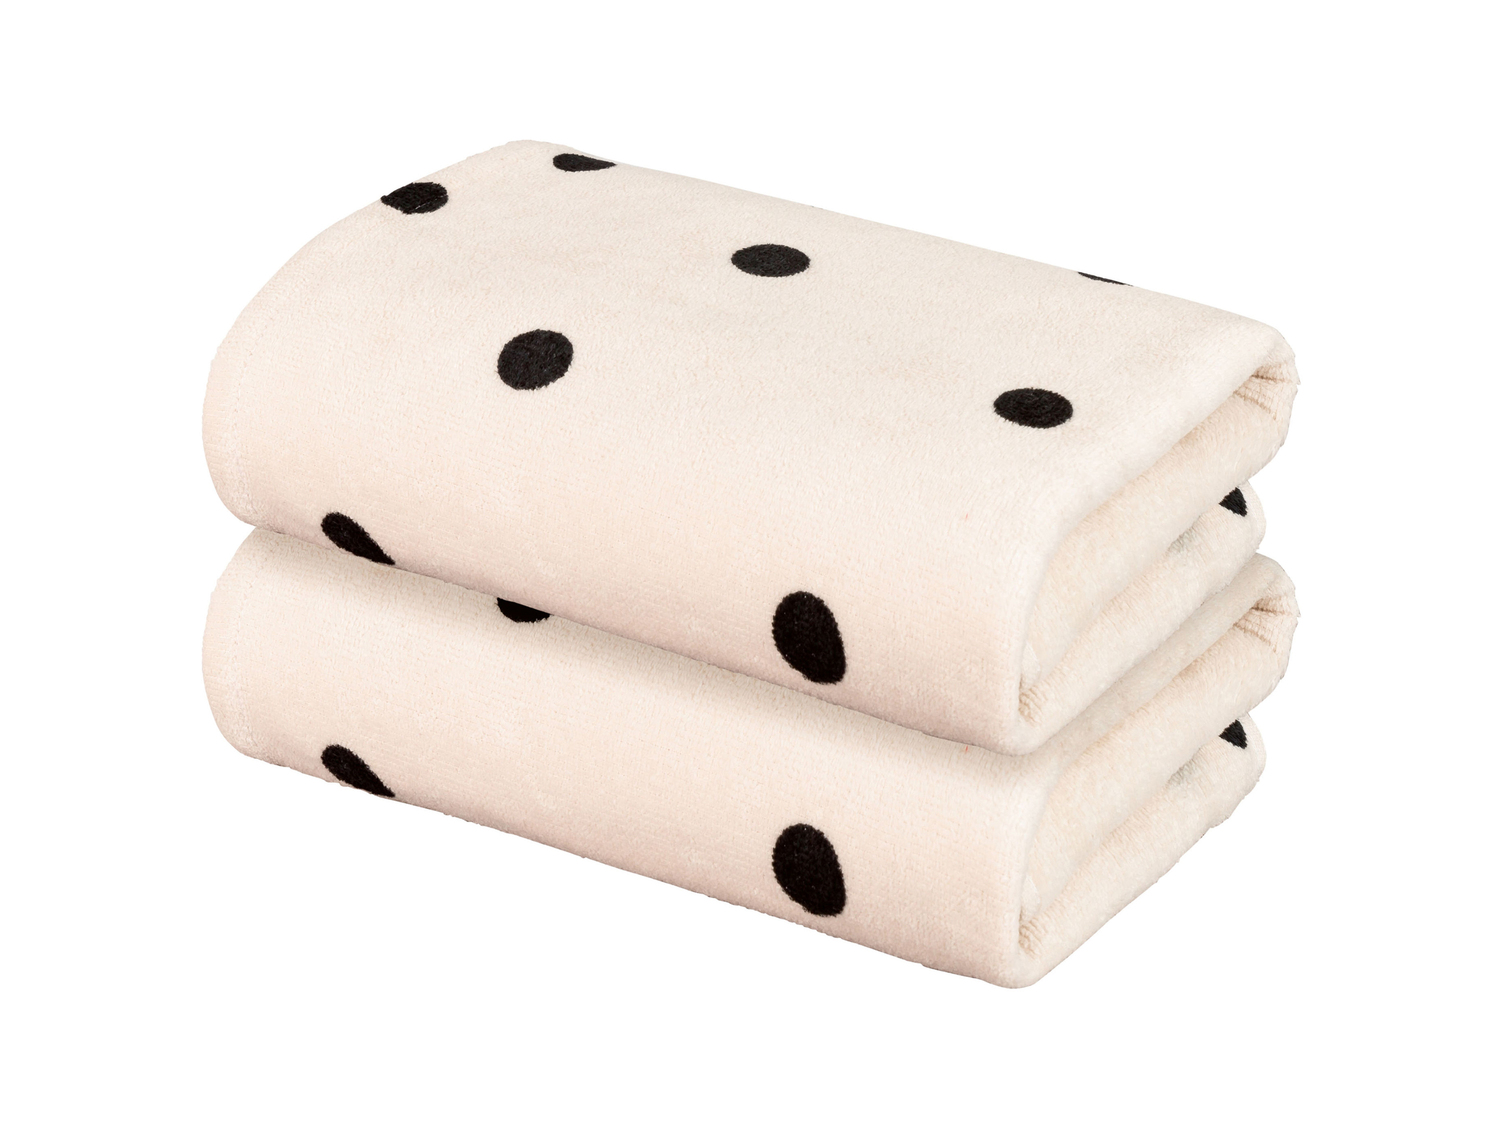 Asciugamano Miomare, prezzo 6.99 &#8364; 
2 pezzi - 50 x 100 cm 
- Produzione ...